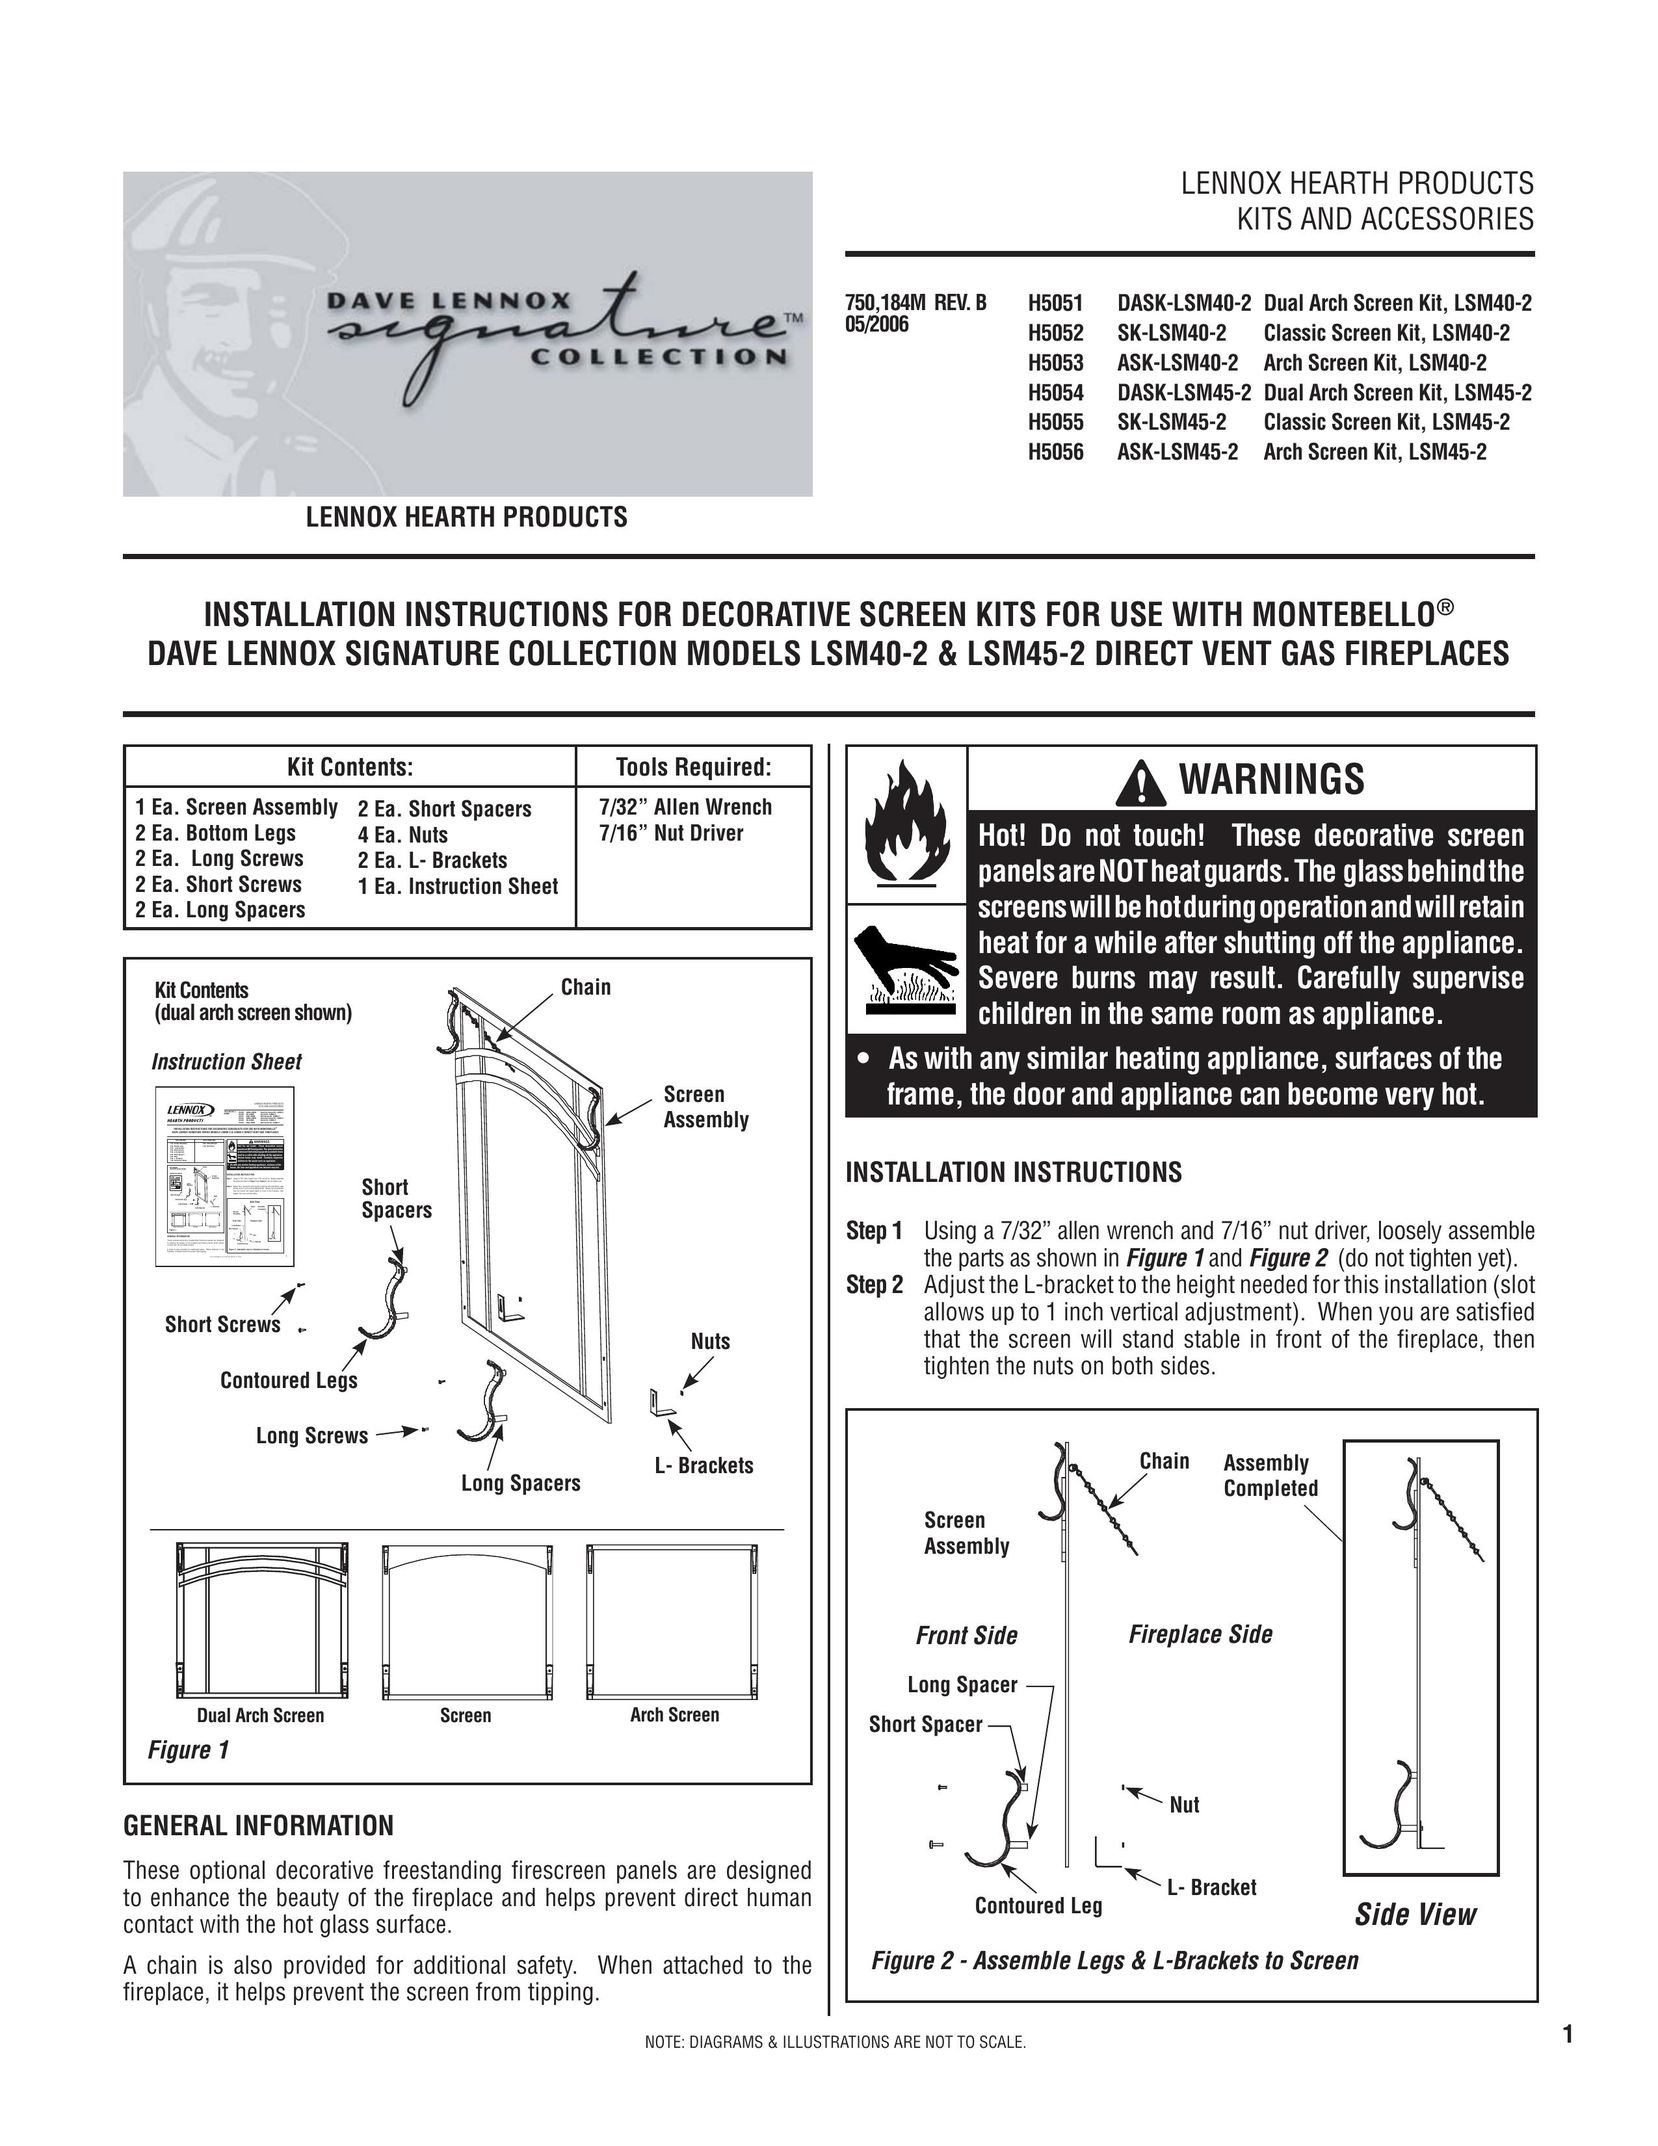 Matsushita LSM40-2 Indoor Fireplace User Manual